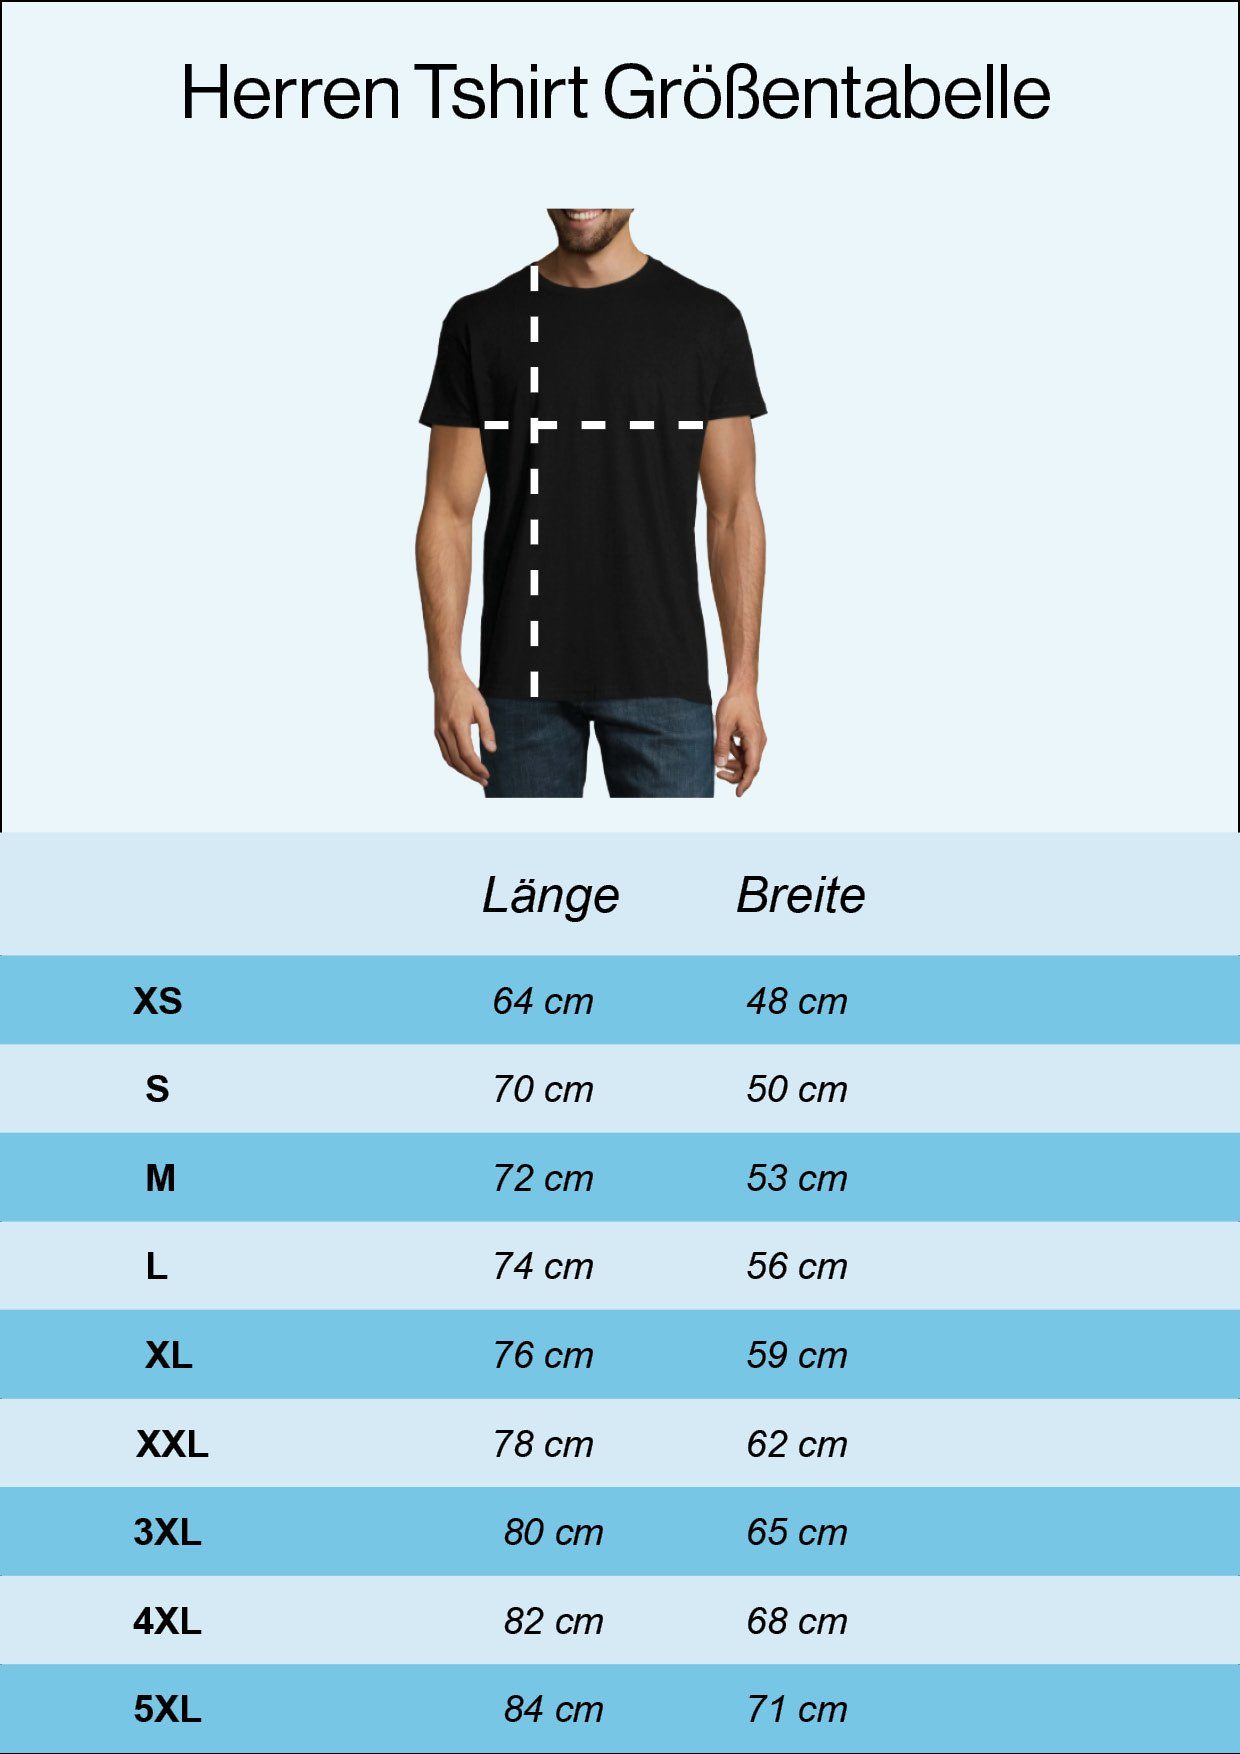 Frontprint T-Shirt trendigem Herren Youth Schädel mit Designz Shirt Navyblau Italy